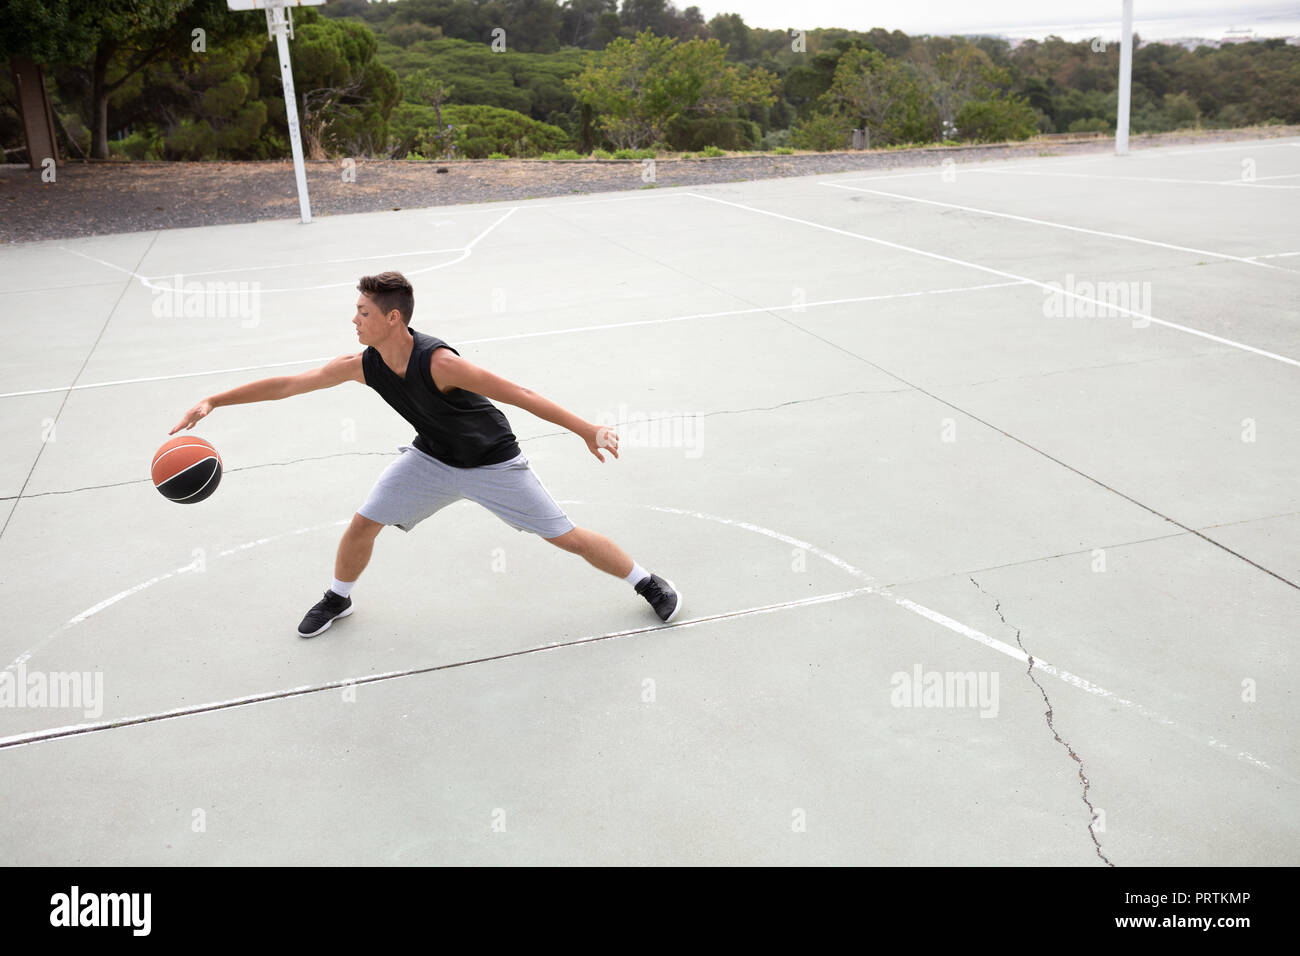 Les adolescents de sexe masculin de basket-ball la pratique sur un terrain de basket-ball Banque D'Images